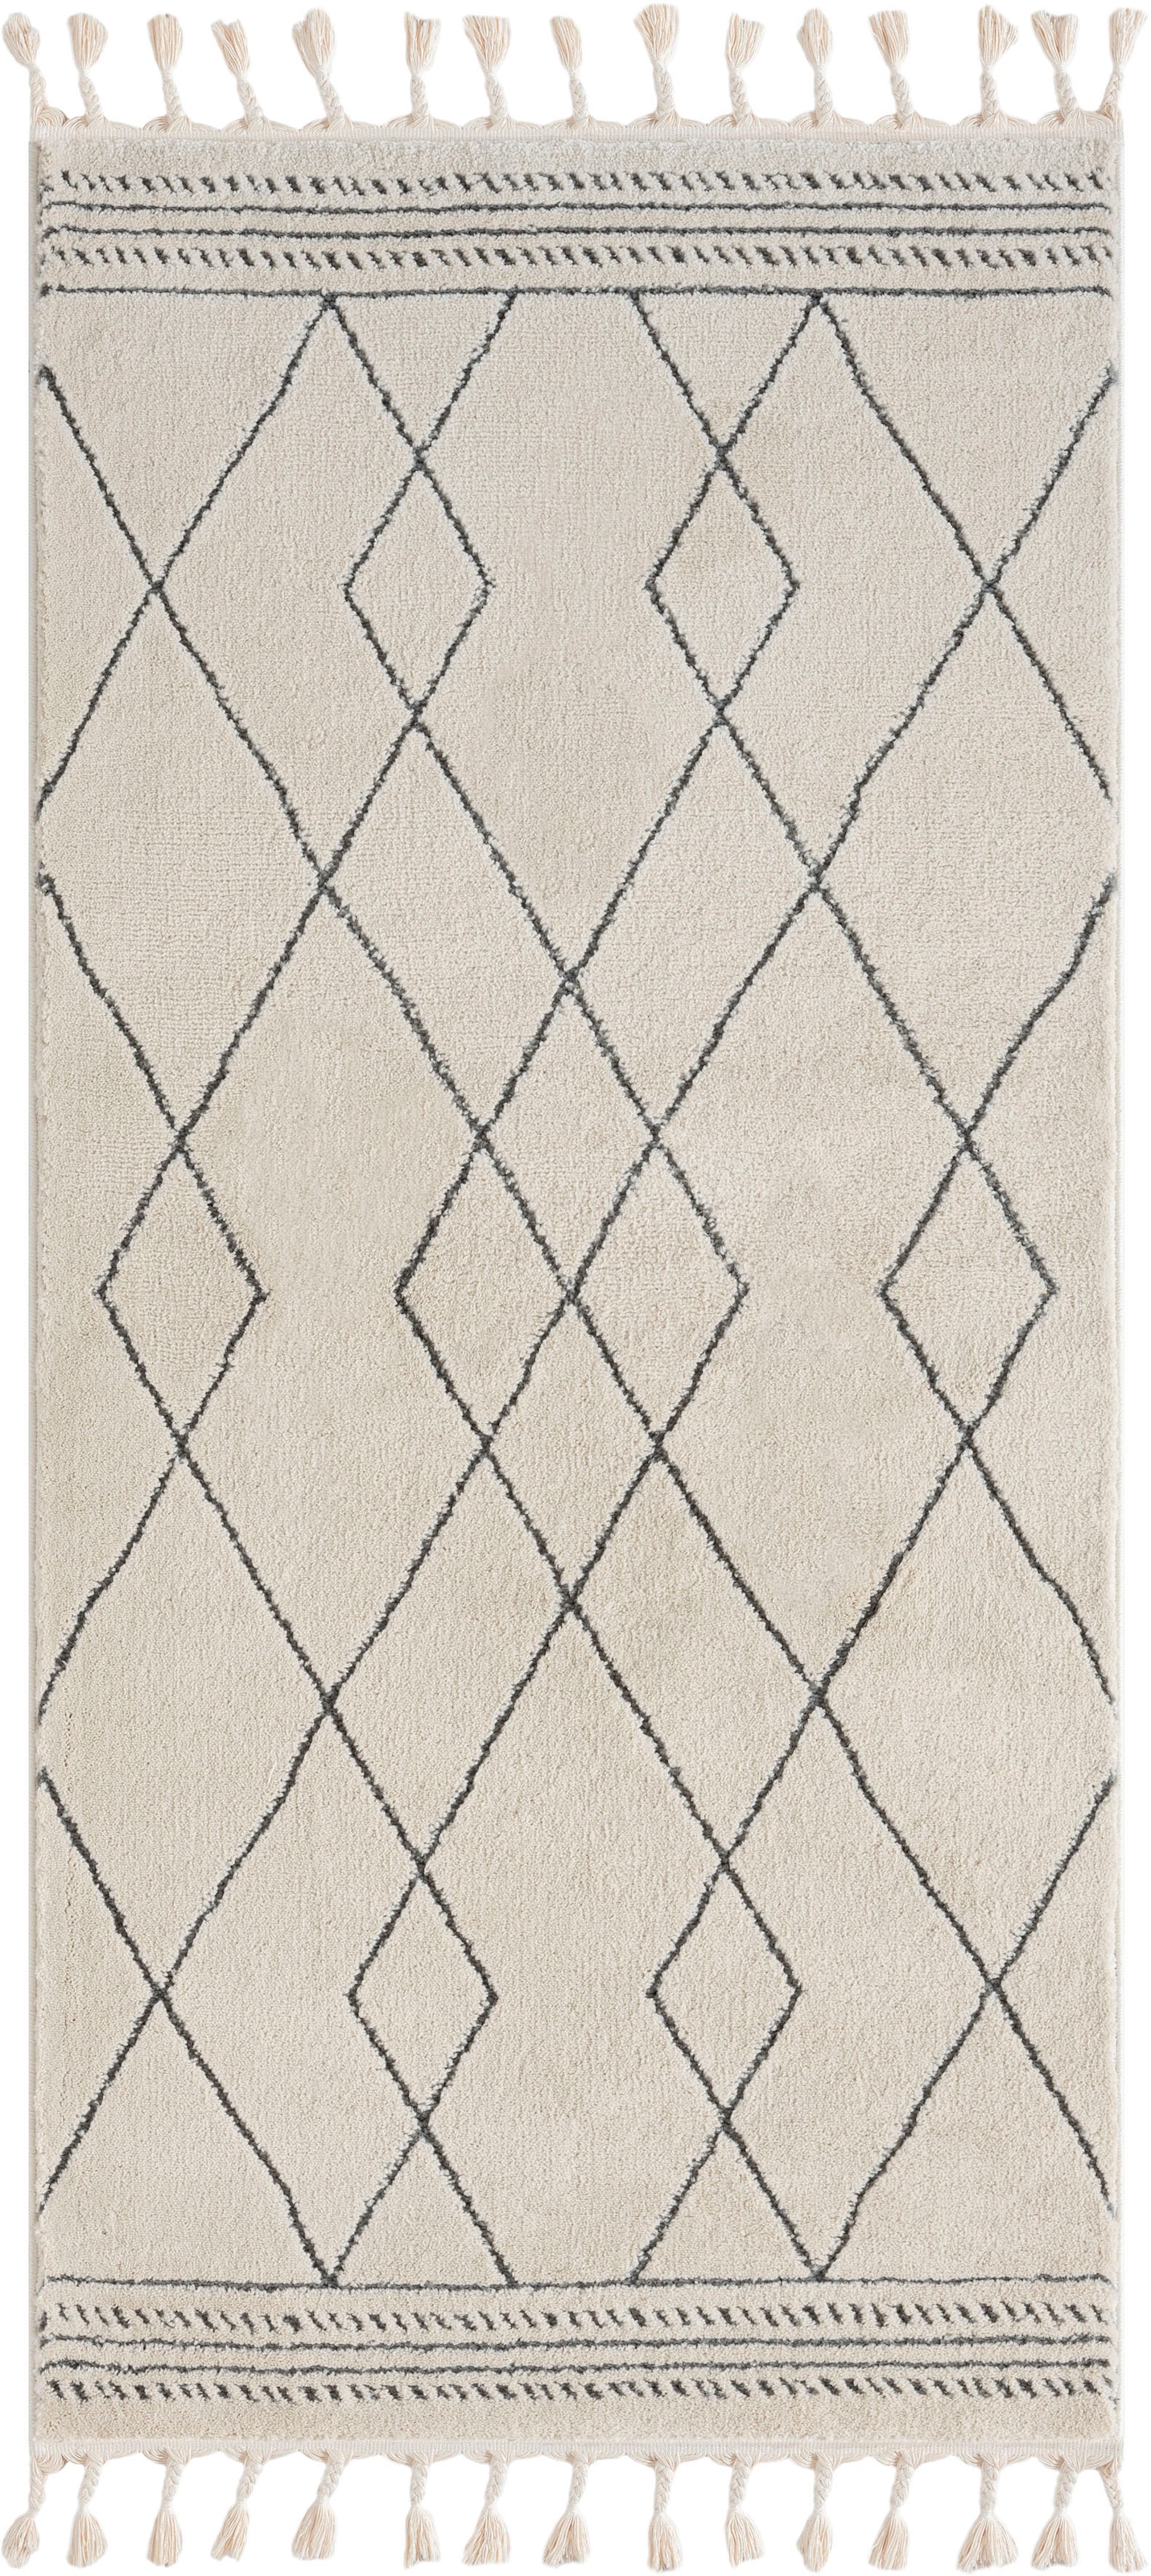 Myflair Möbel & Accessoires Hochflor-Teppich »Moroccan Design«, rechteckig, modern, marokkanisches Design, Rauten Muster, weich, mit Fransen